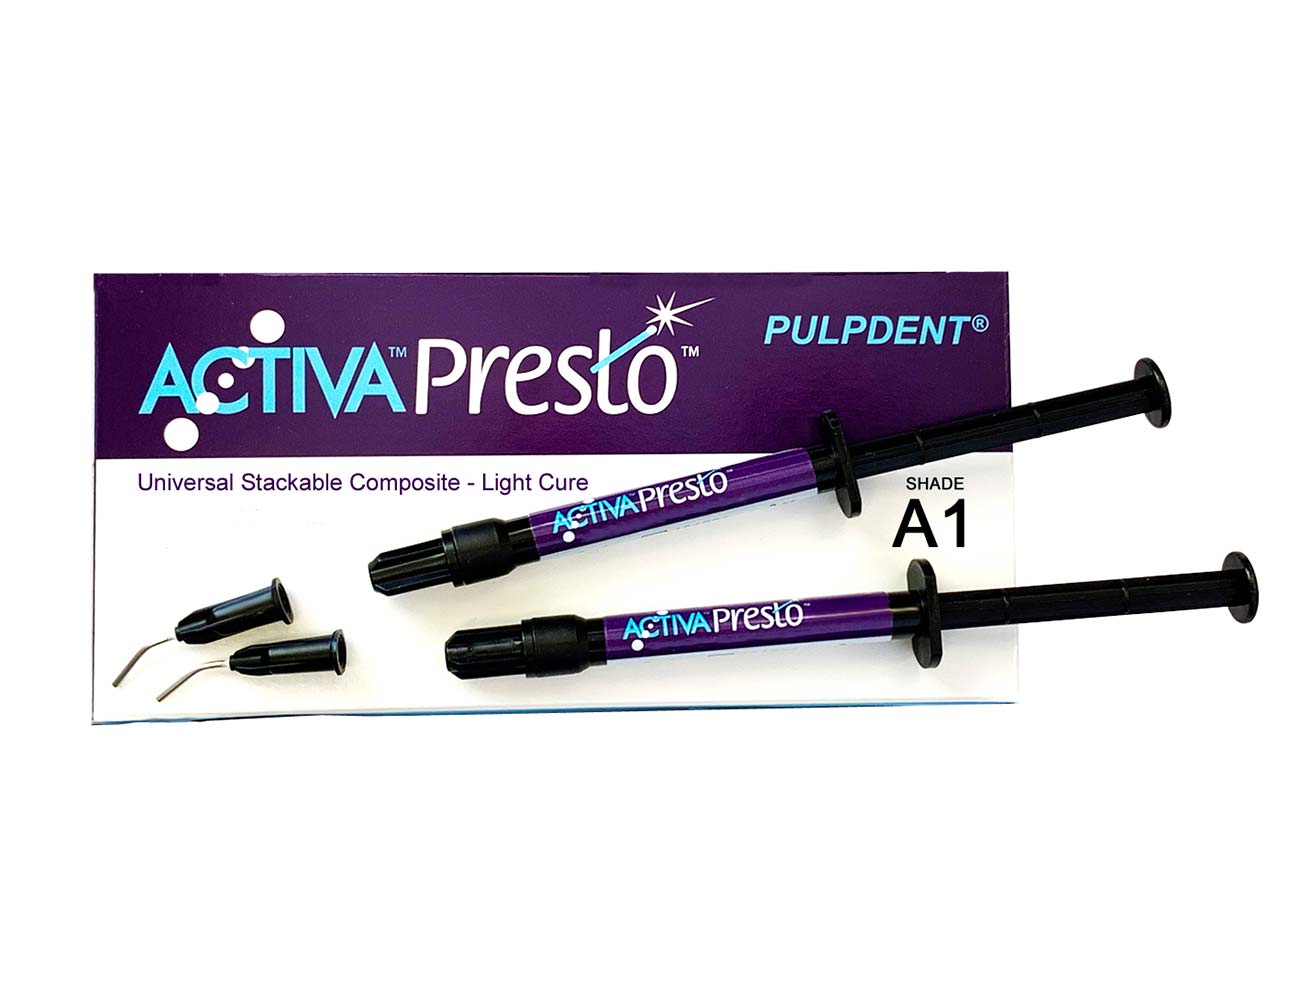 Produktbild activa-presto 2x 1,2ml Spritzen mit Verpackung